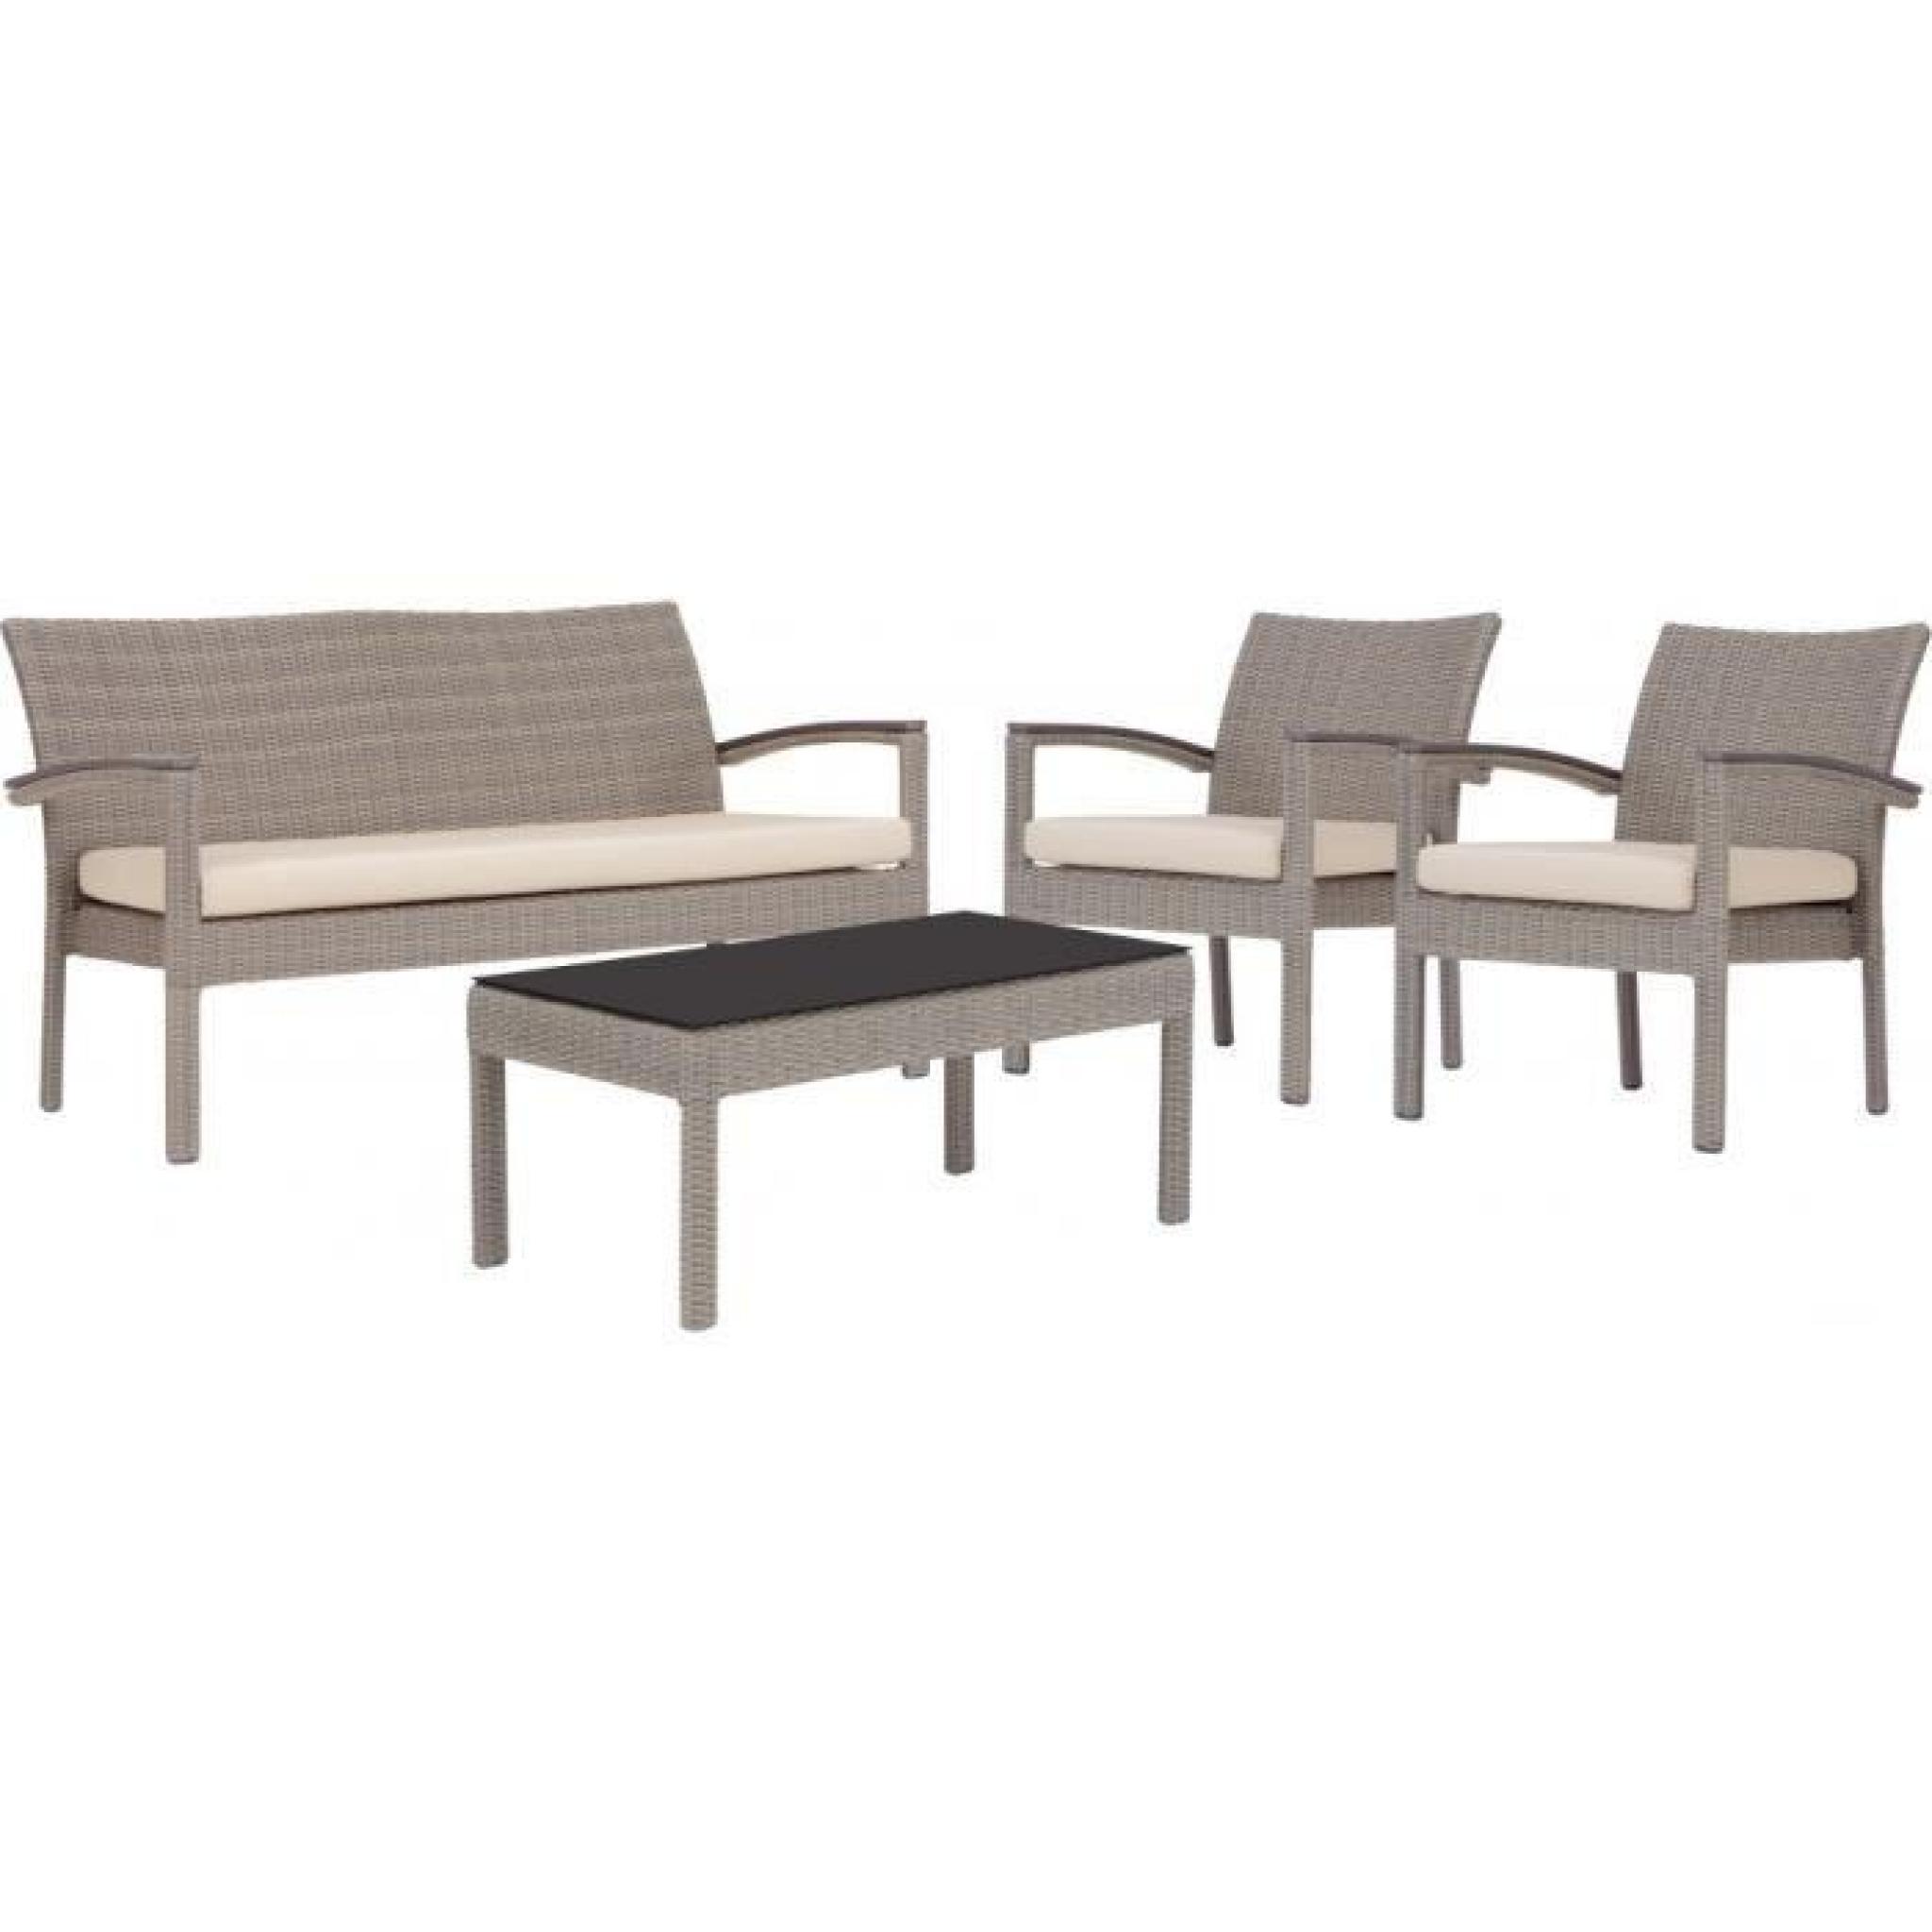 Ensemble 4 places canapé fauteuils table aluminium et résine taupe avec coussins beiges